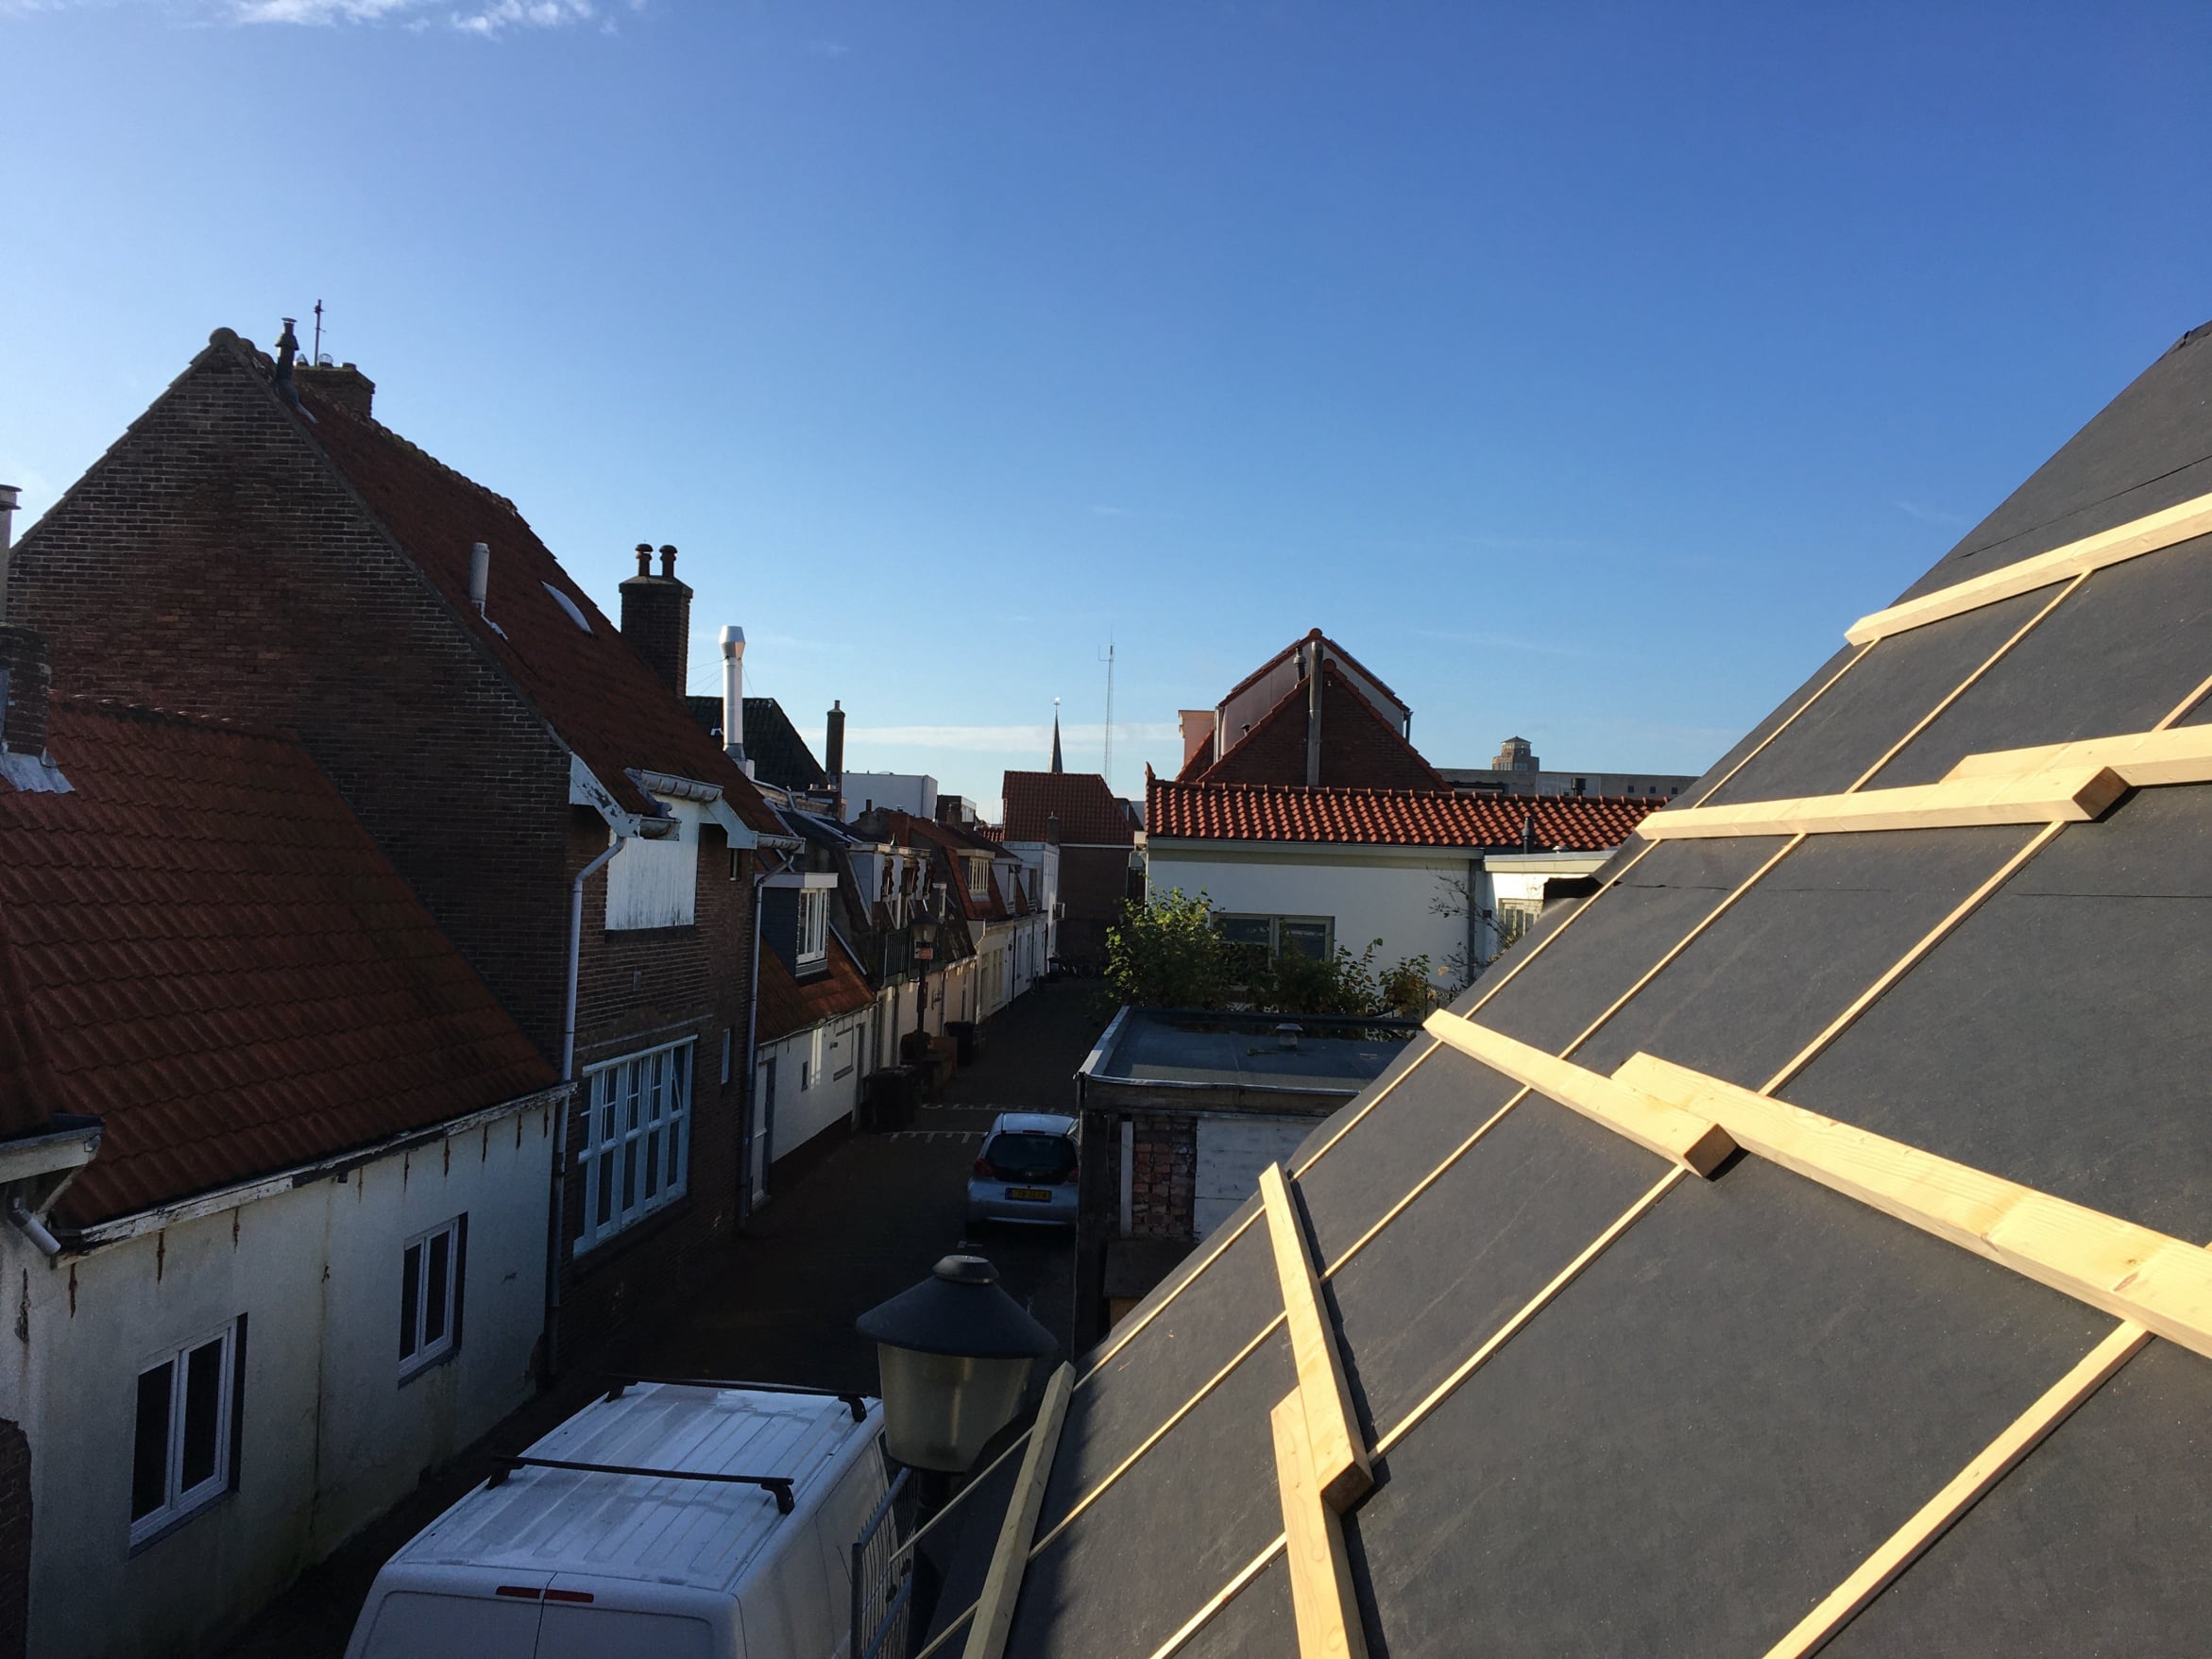 Constructie van een dakopbouw door DHB Bouw B.V. op een zonnige dag in Zandvoort, met vakmanschap in houtwerk en dakbedekking zichtbaar tegen de achtergrond van traditionele Nederlandse huizen.